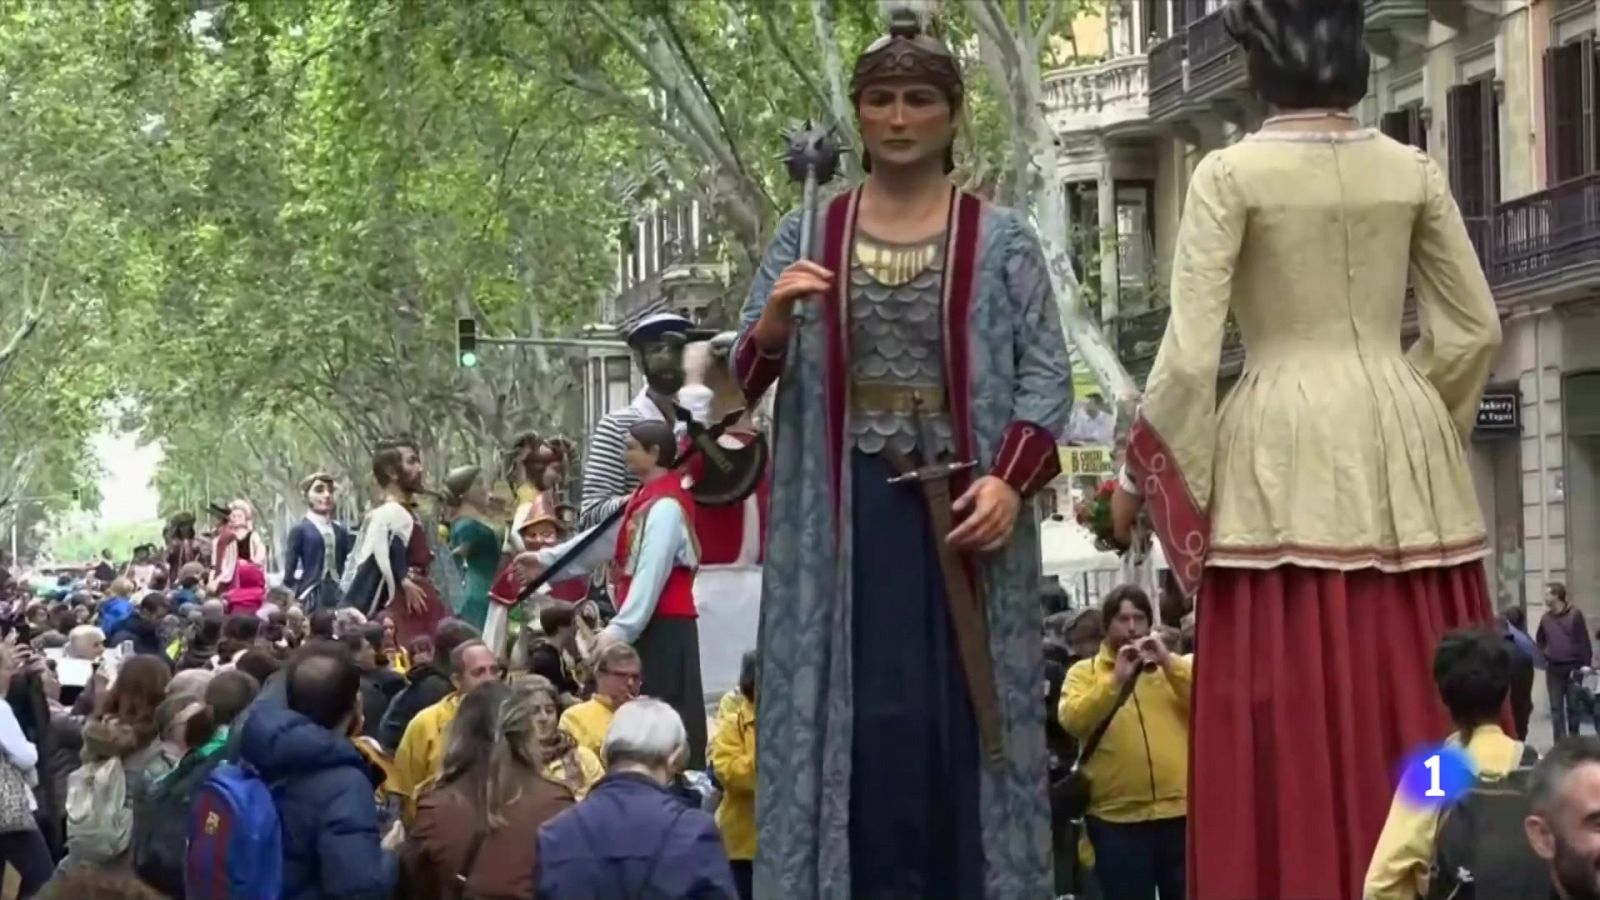 600 gegants desfilen per Barcelona en una celebració èpica